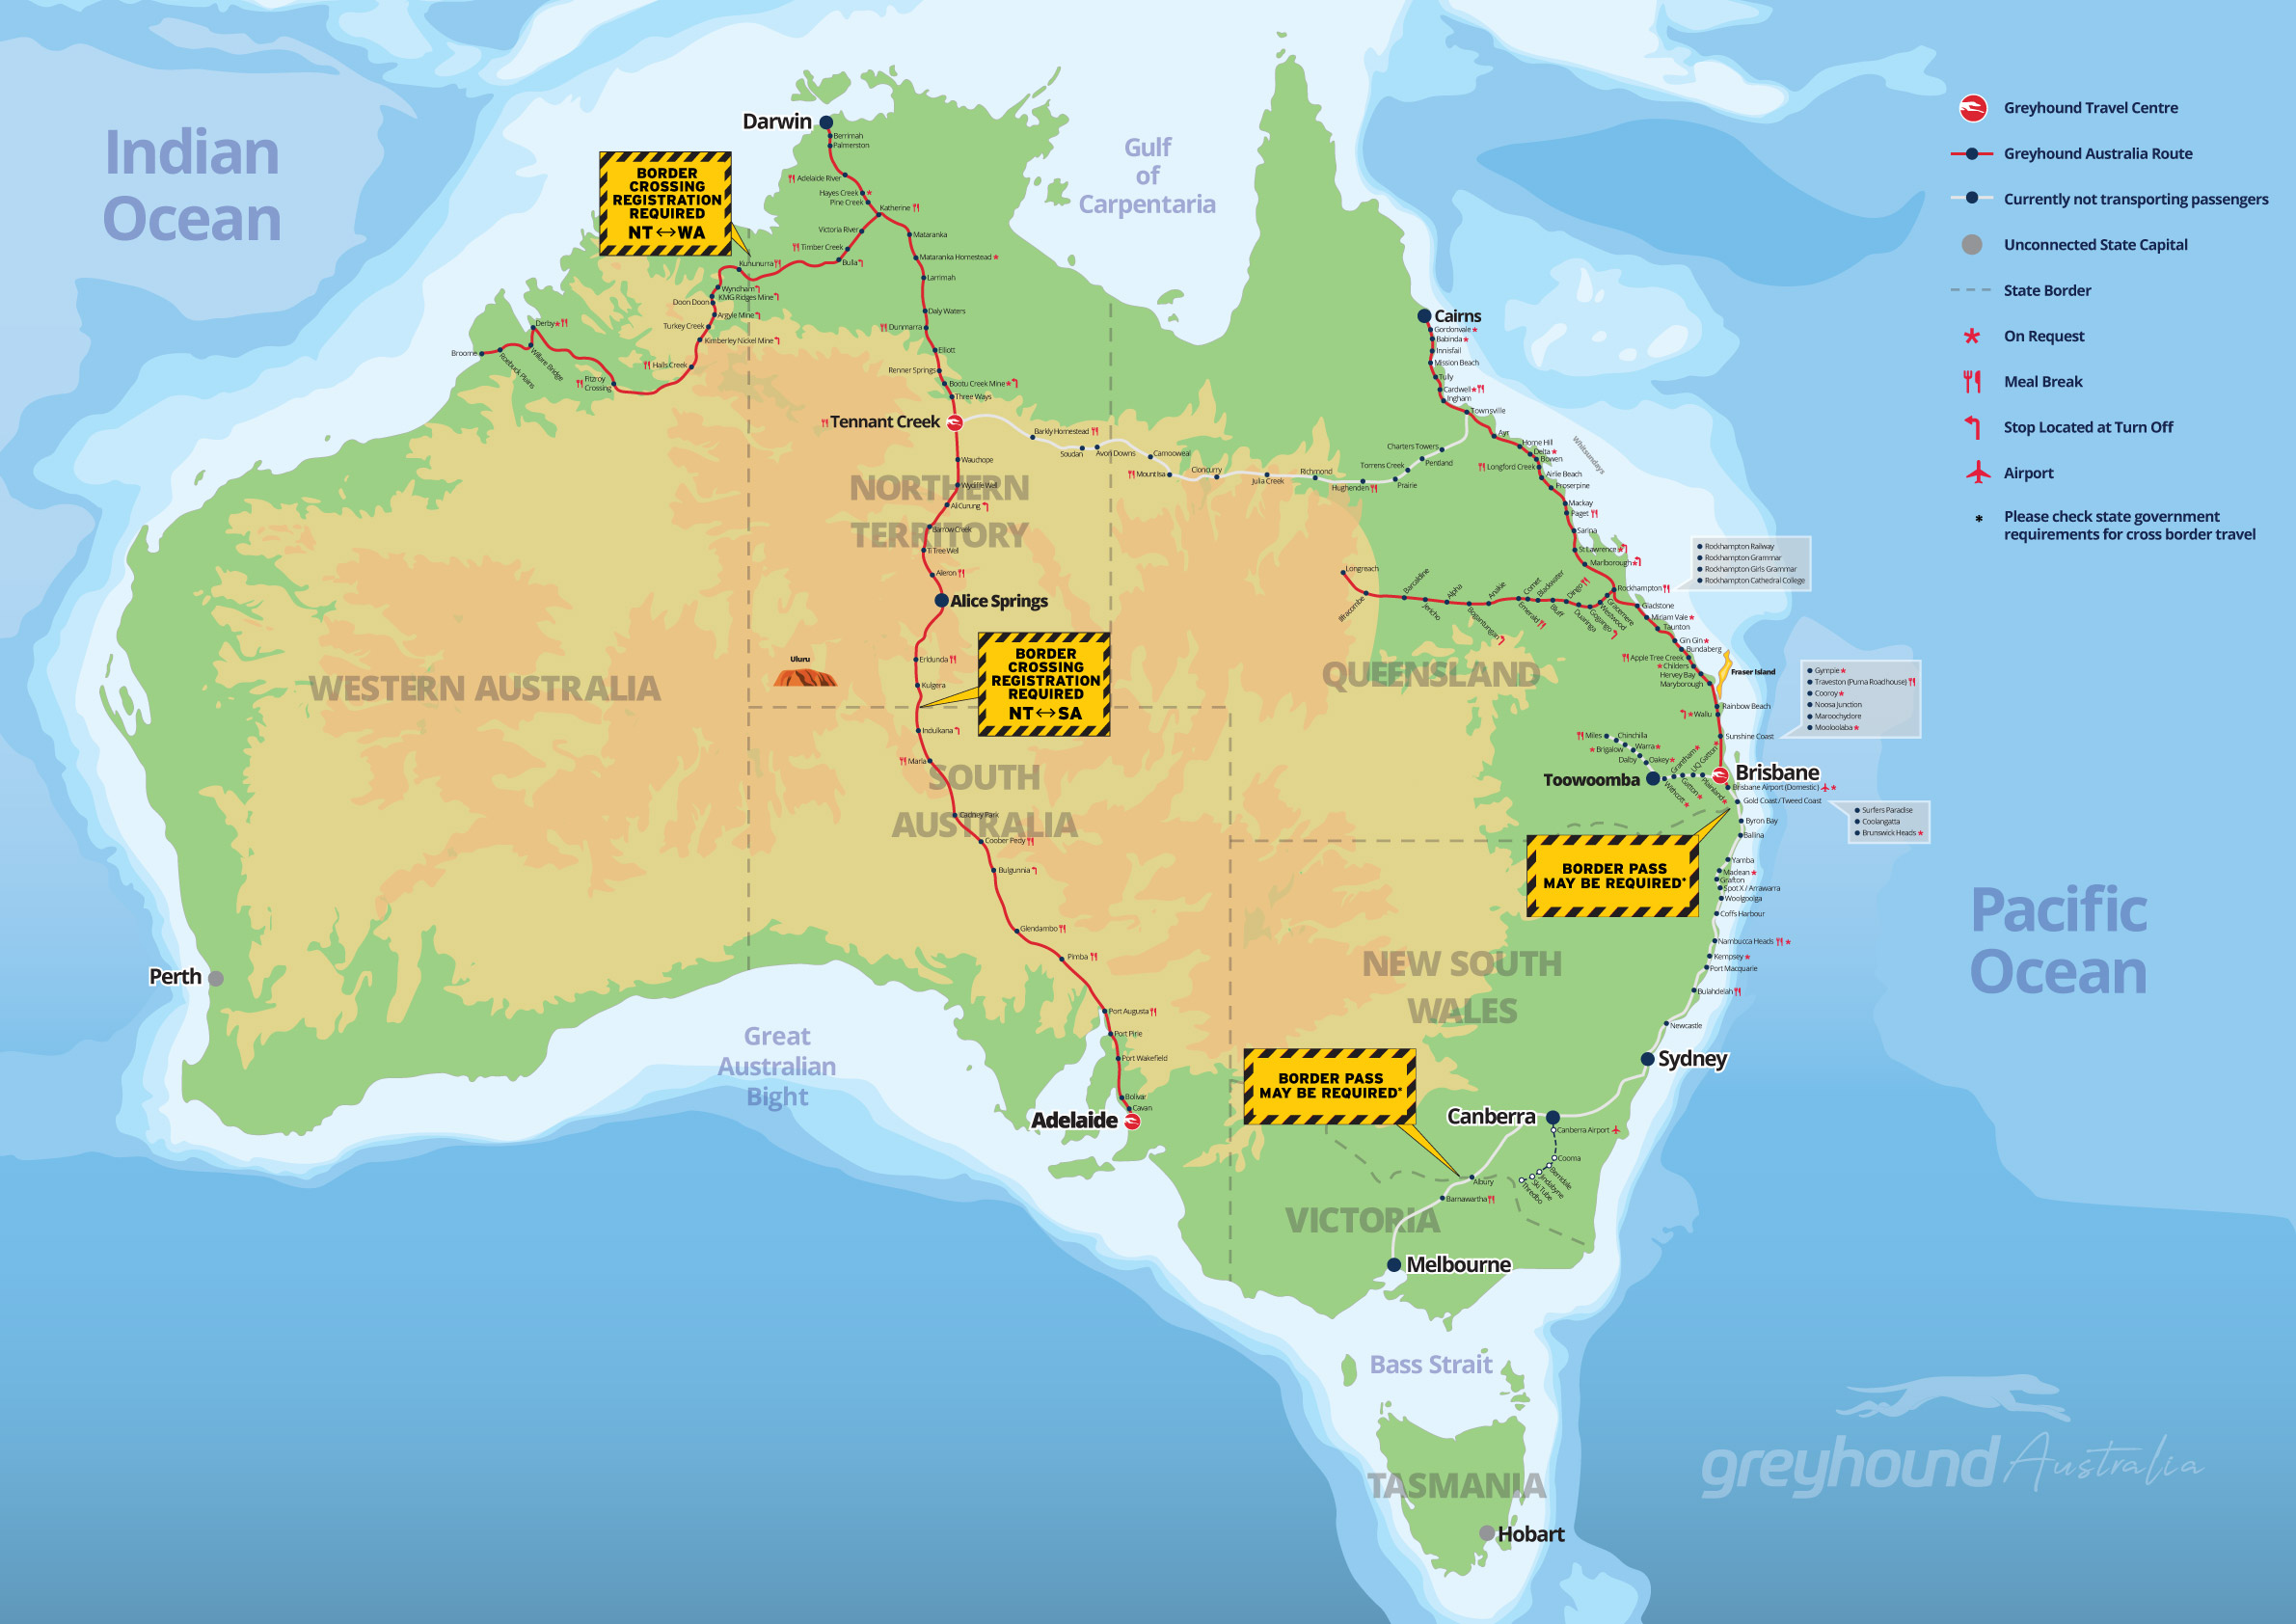 Greyhound Australia Network Map - effective 2 August 2021